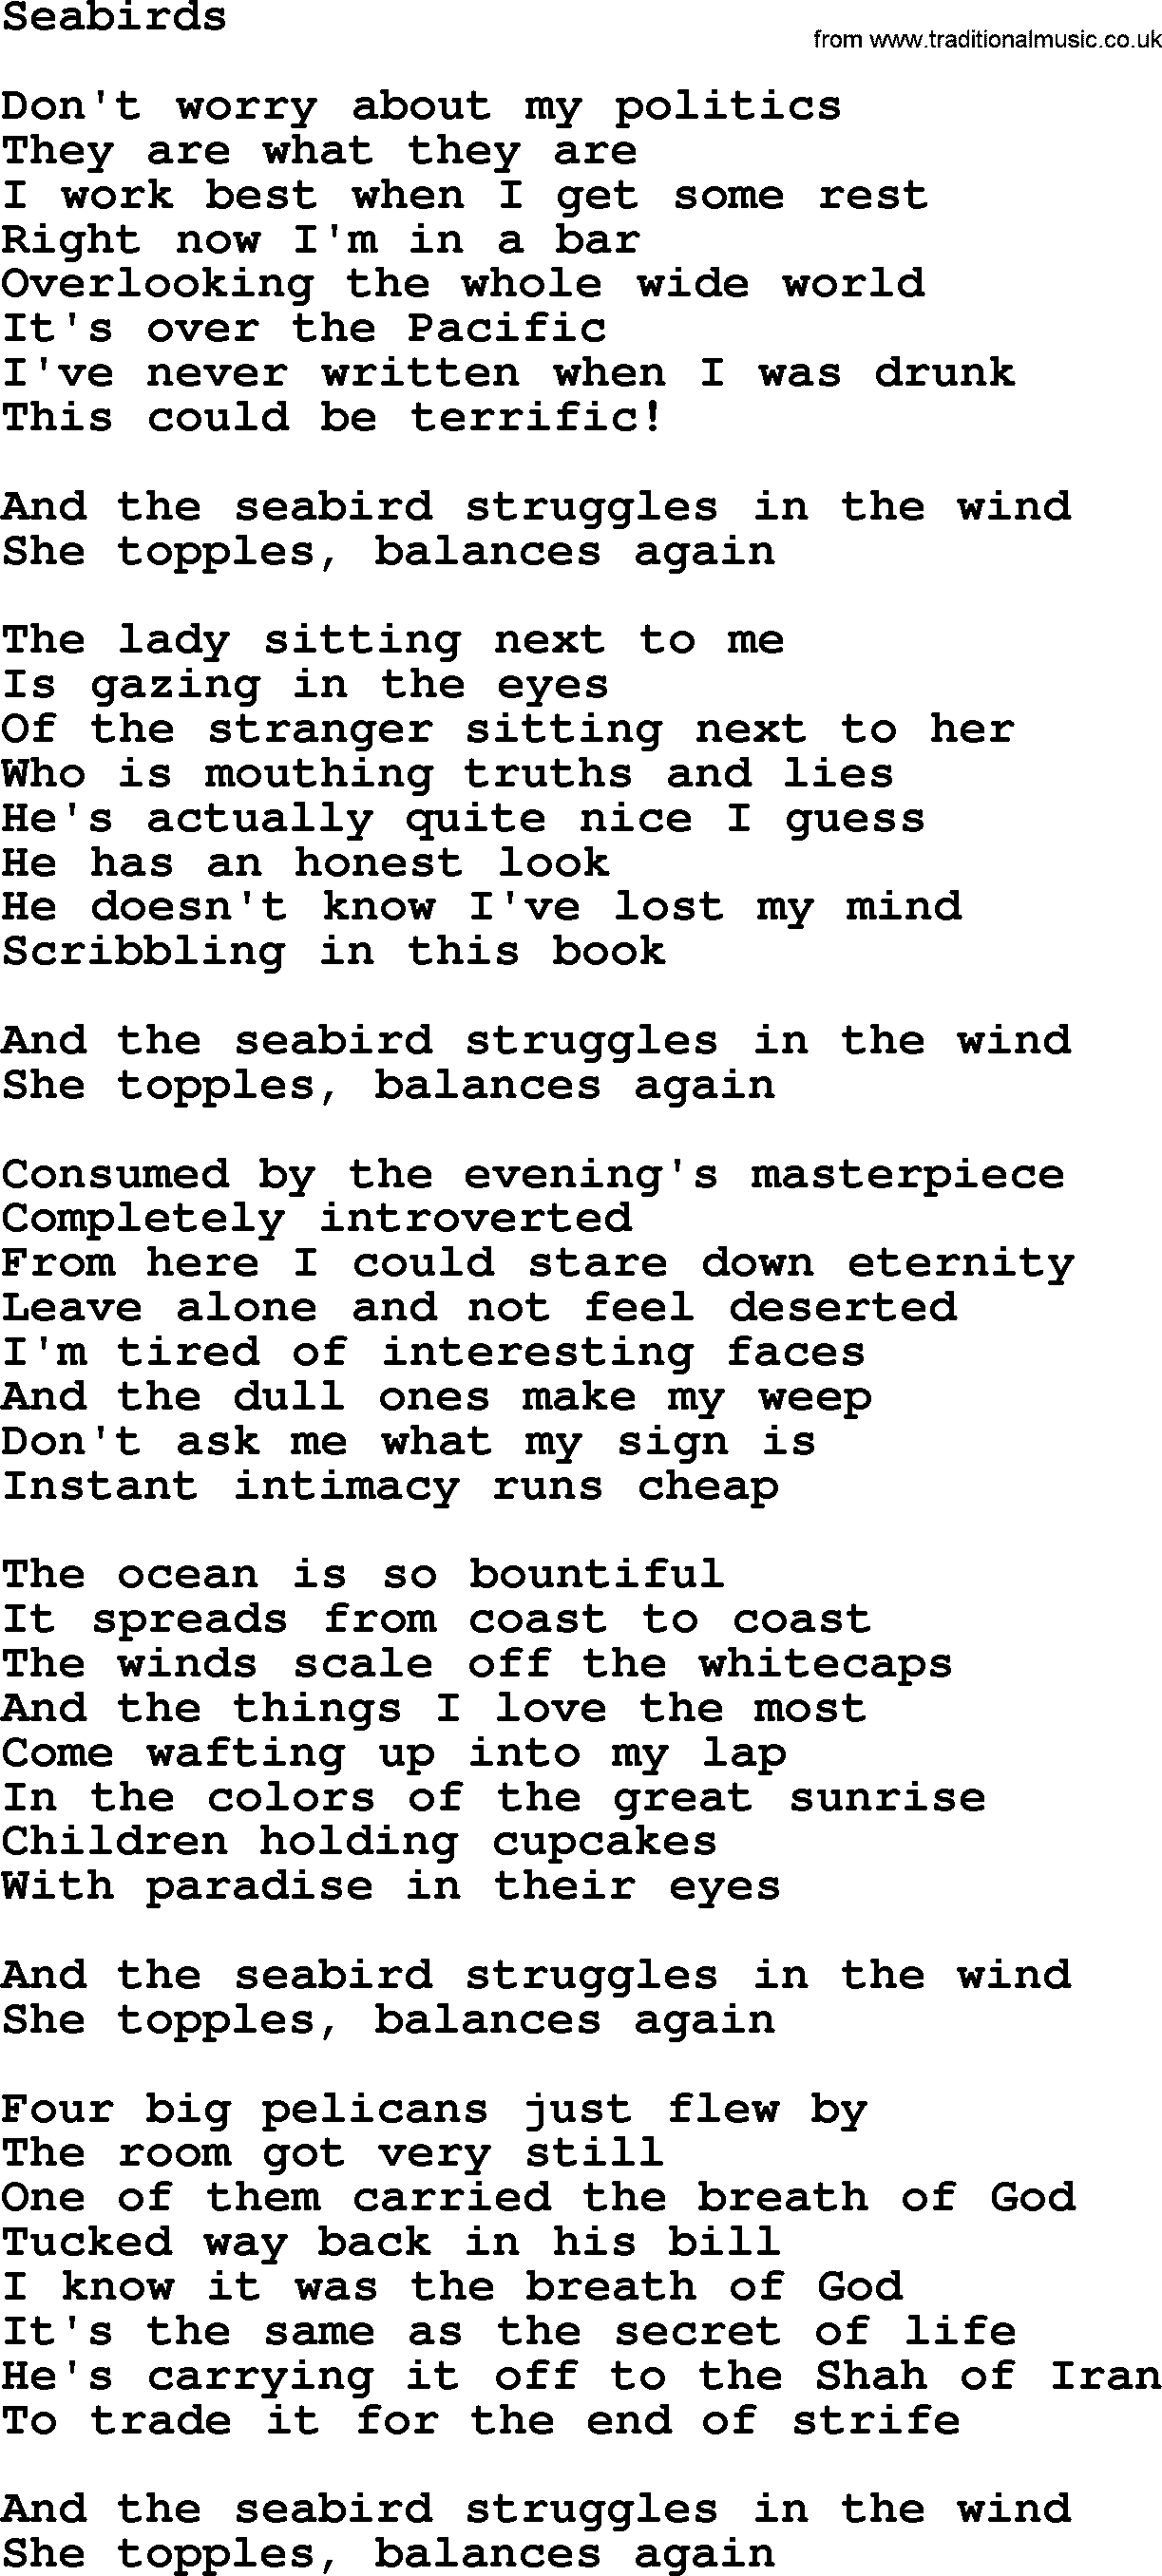 Joan Baez song Seabirds, lyrics